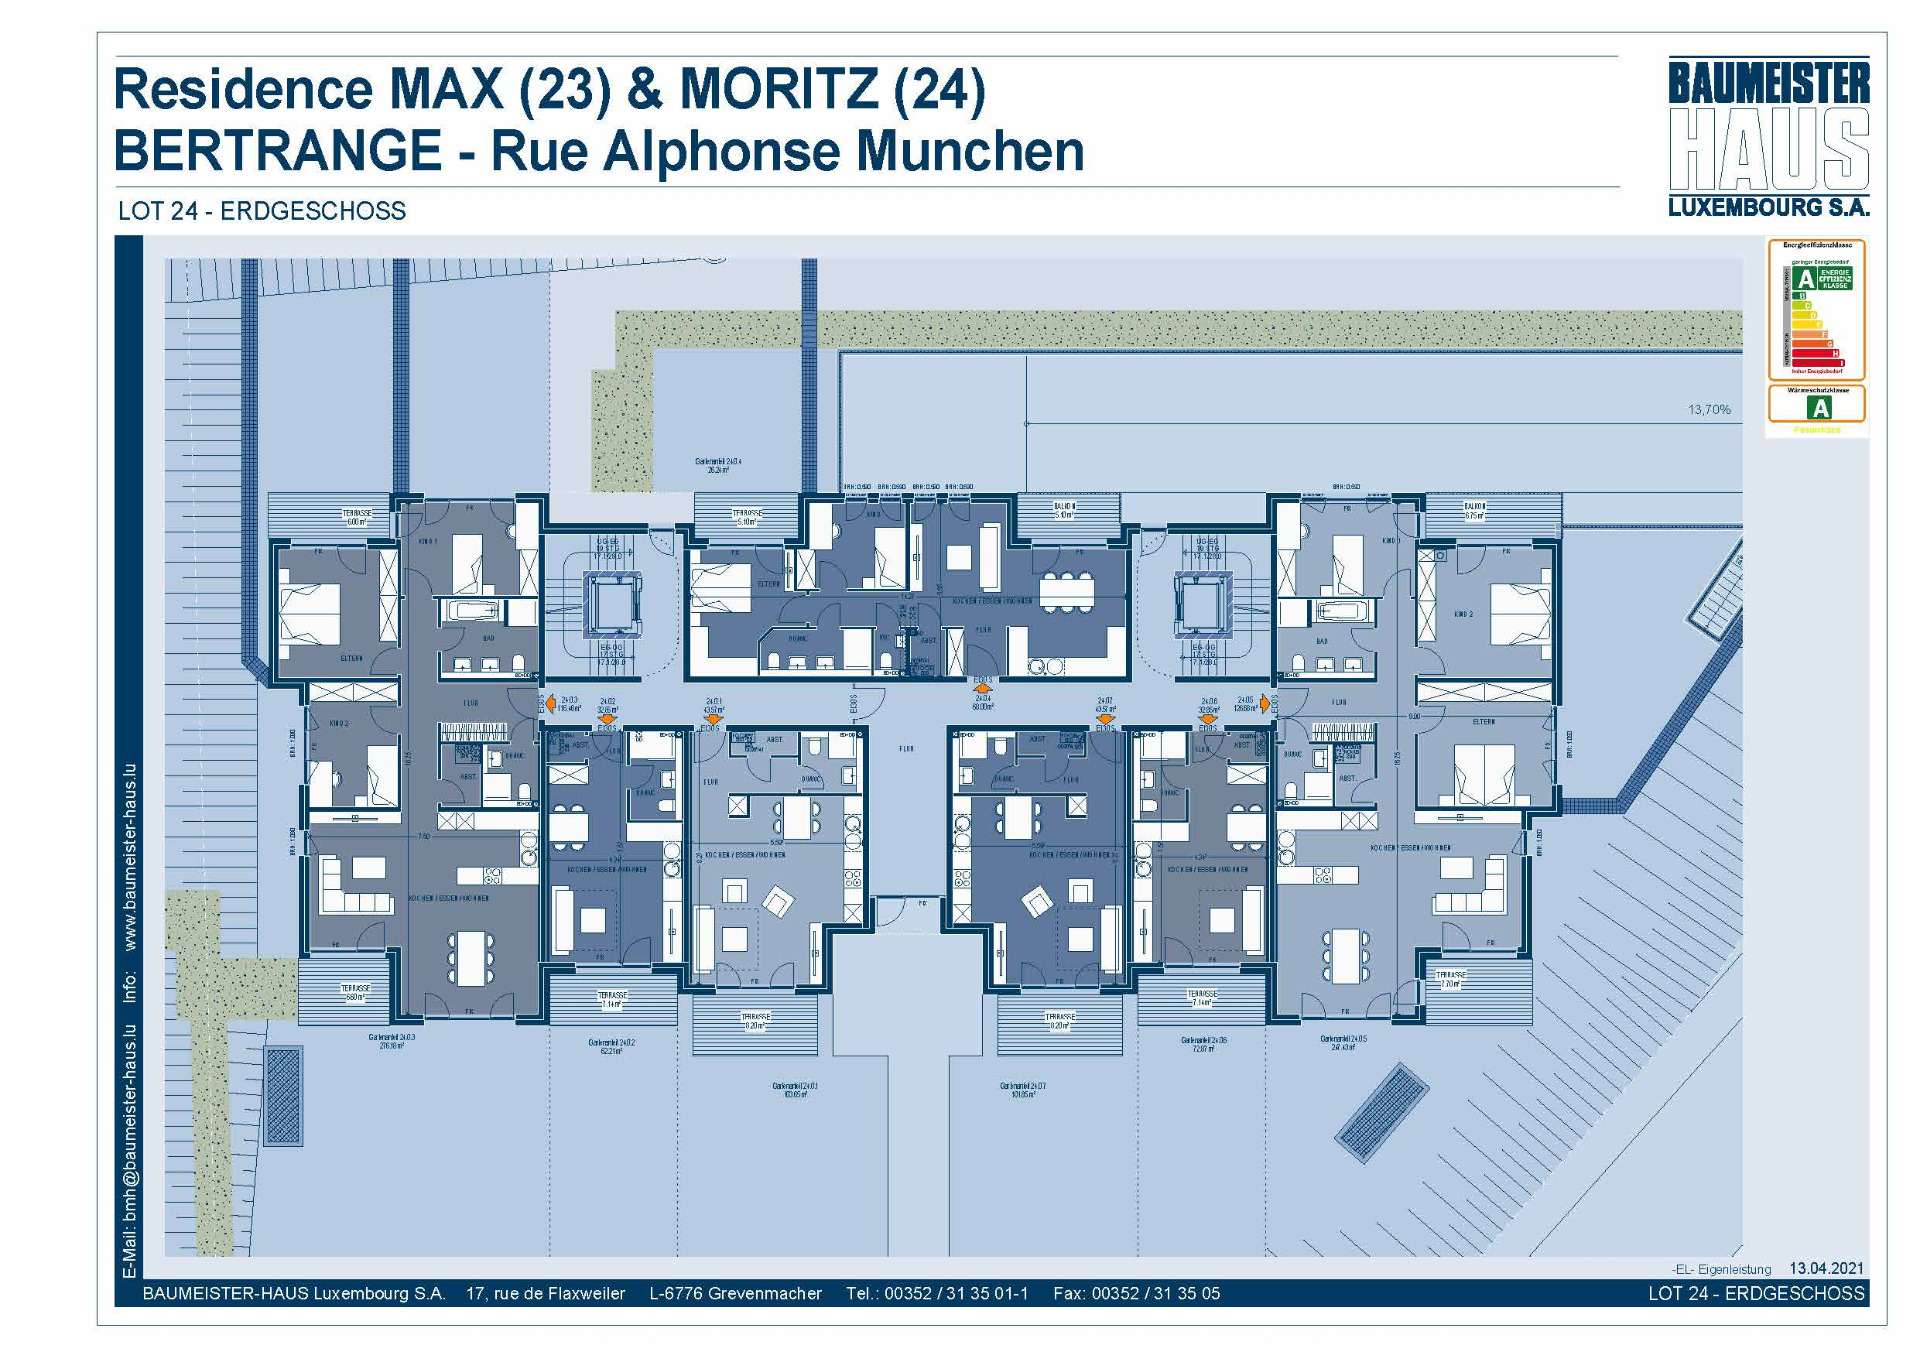 Residenz Moritz 24.0.4